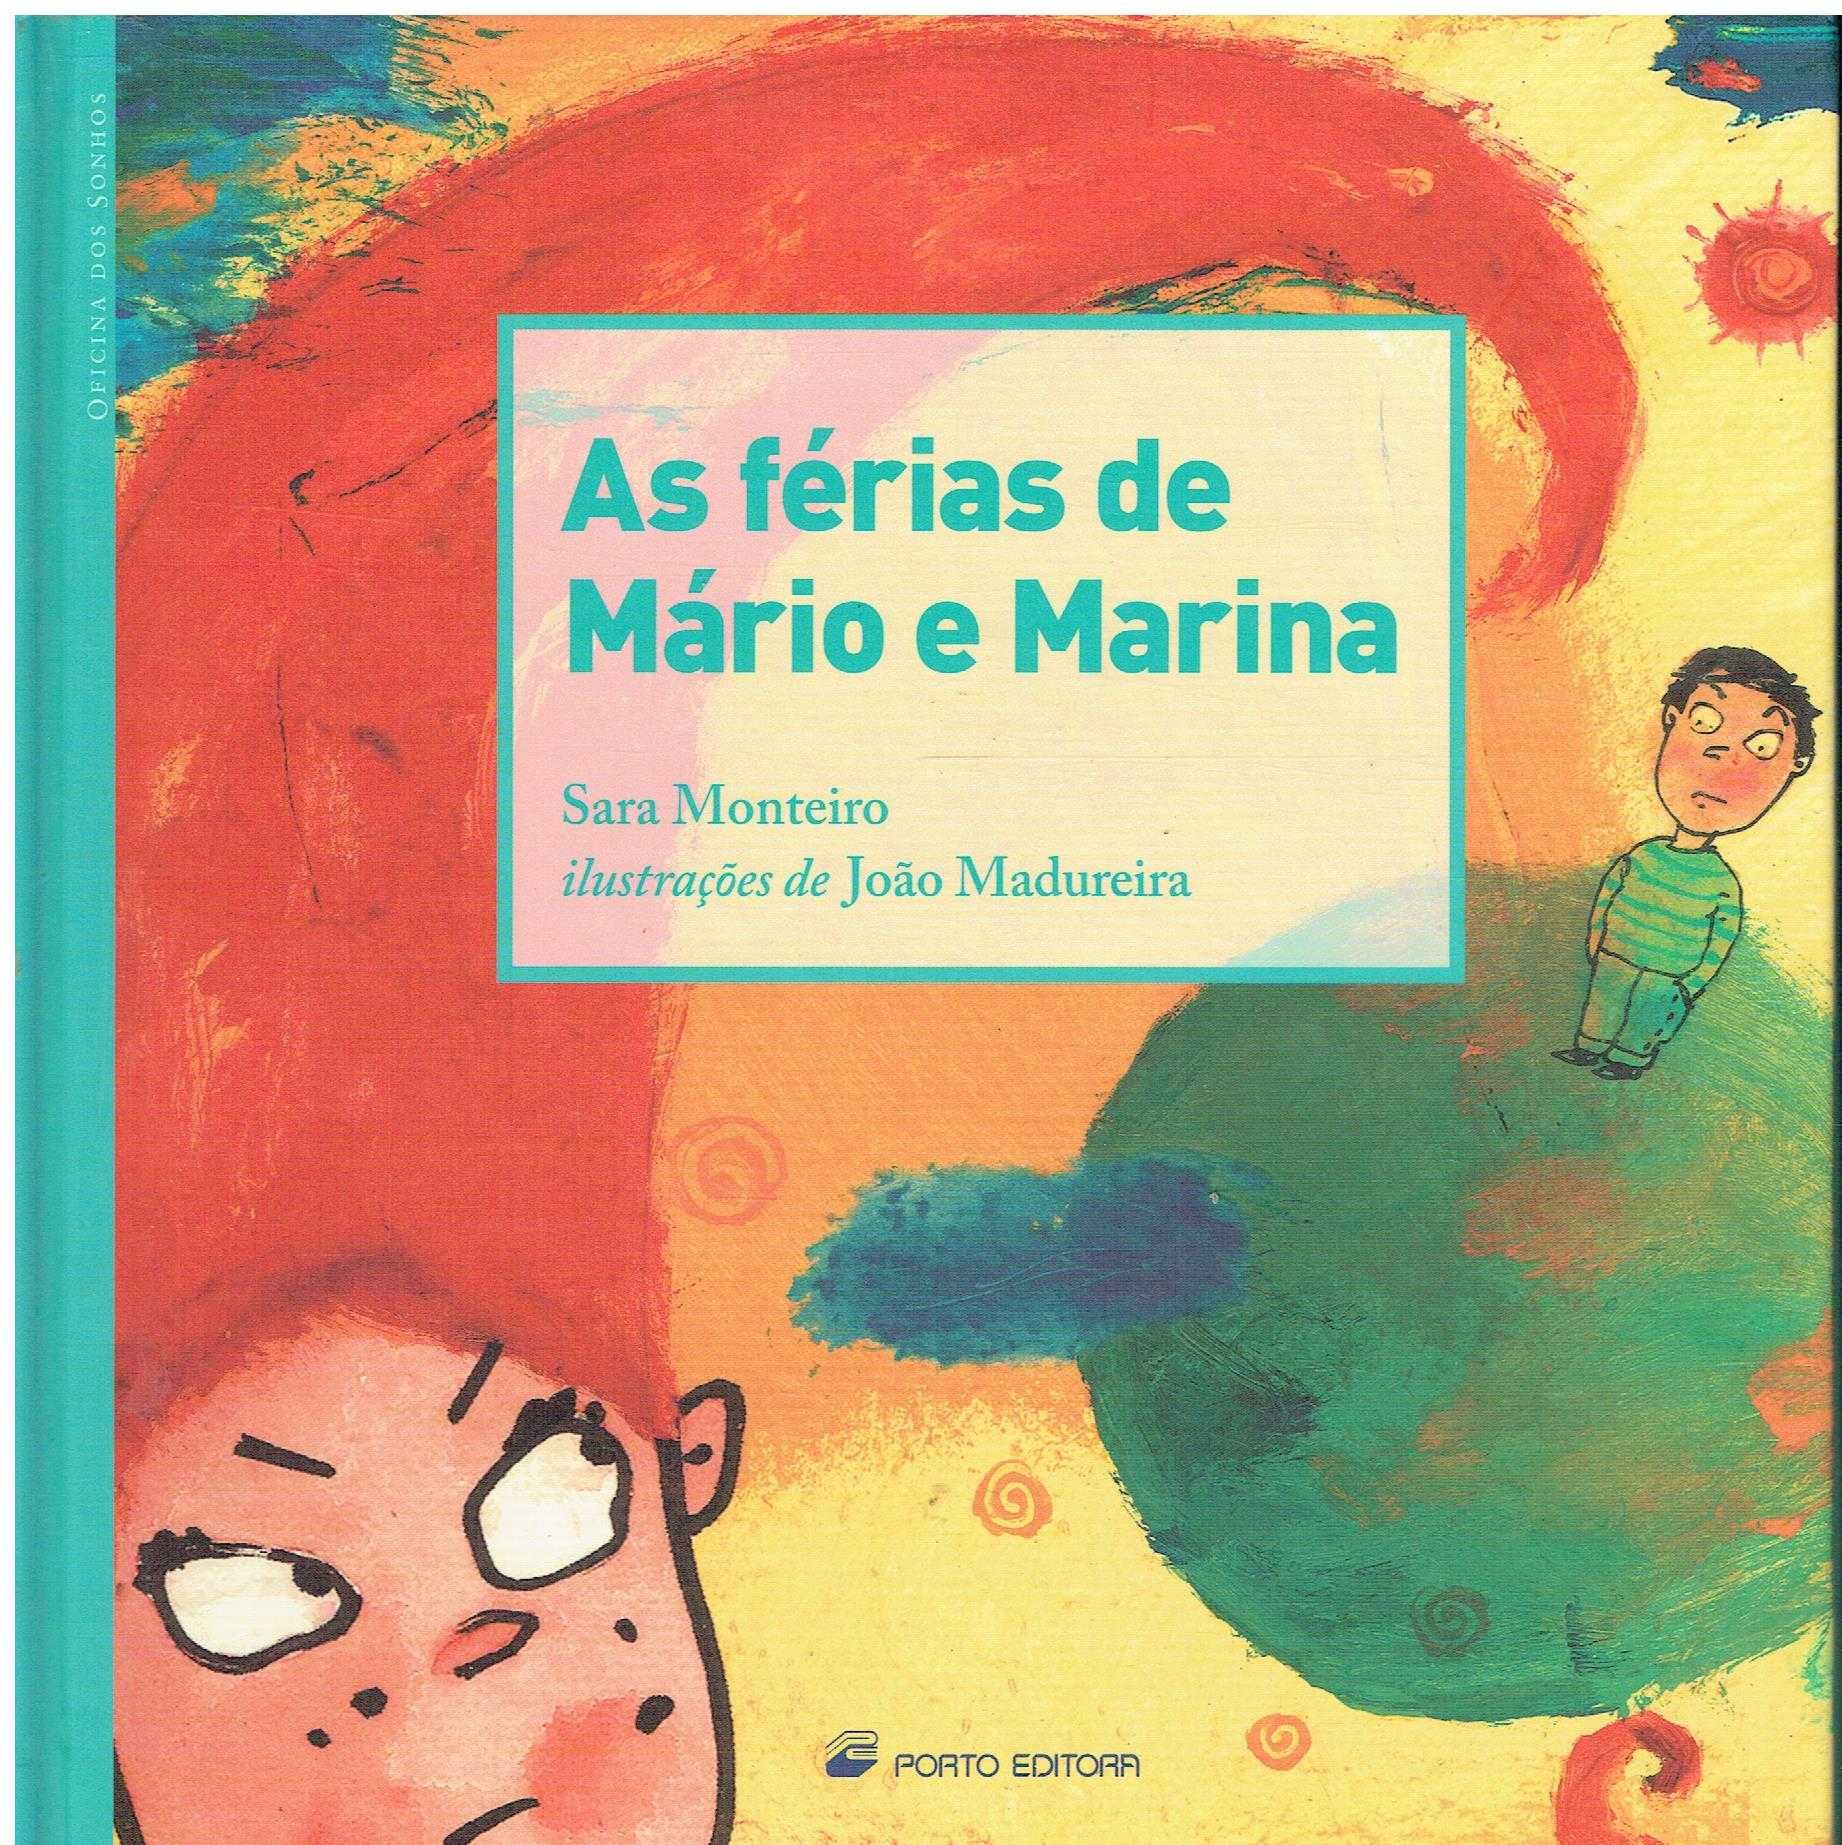 7909

As férias de Mário e Marina
de Sara Monteiro